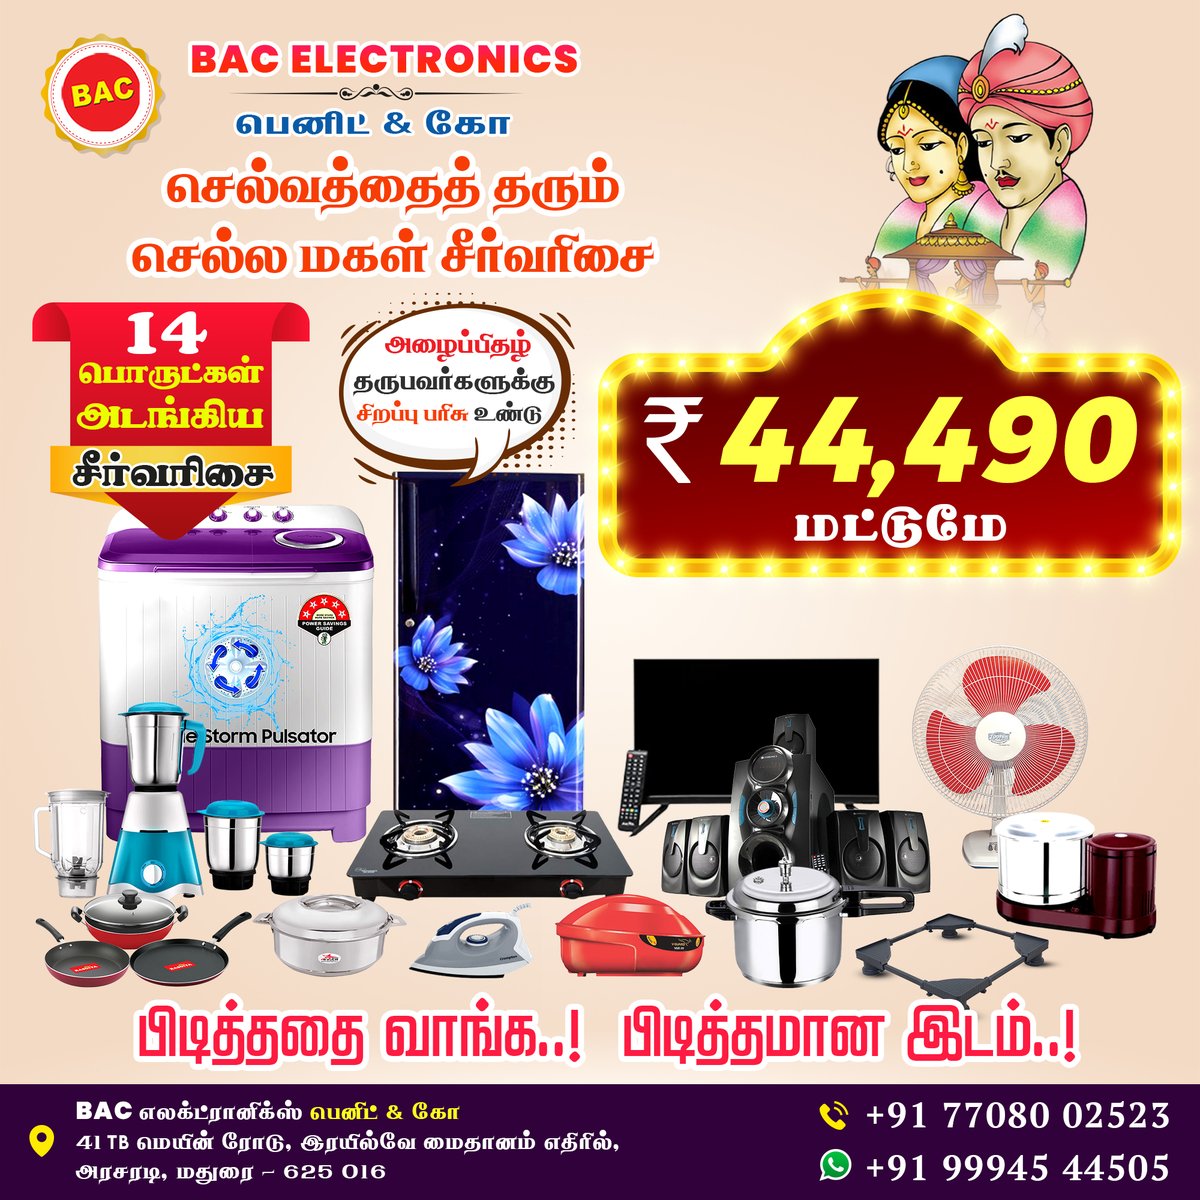 மணவிழா சீர்வரிசை காம்போ - BAC Electronics Benit & Co - Madurai
#BenitandCo #Homeappliances #electronics #specialoffers #affordableprice #homeappliances #Bestquality #emiavailable #marriagegift #seervarisai #quality #madurai #theni